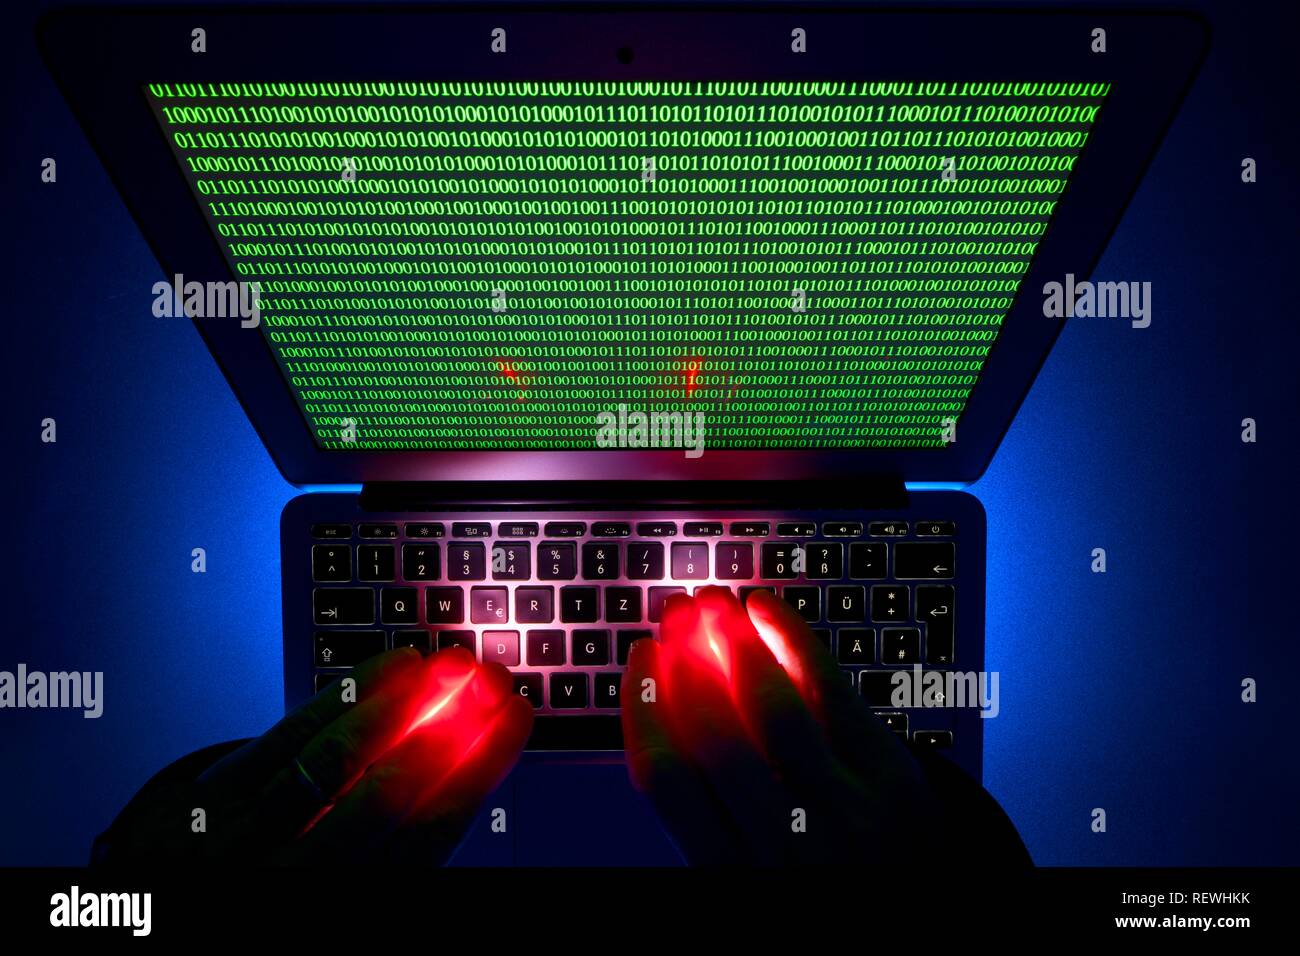 Les mains sur un clavier d'ordinateur, symbole de droit la cybercriminalité, la criminalité informatique, la vie privée, Bade-Wurtemberg, Allemagne Banque D'Images